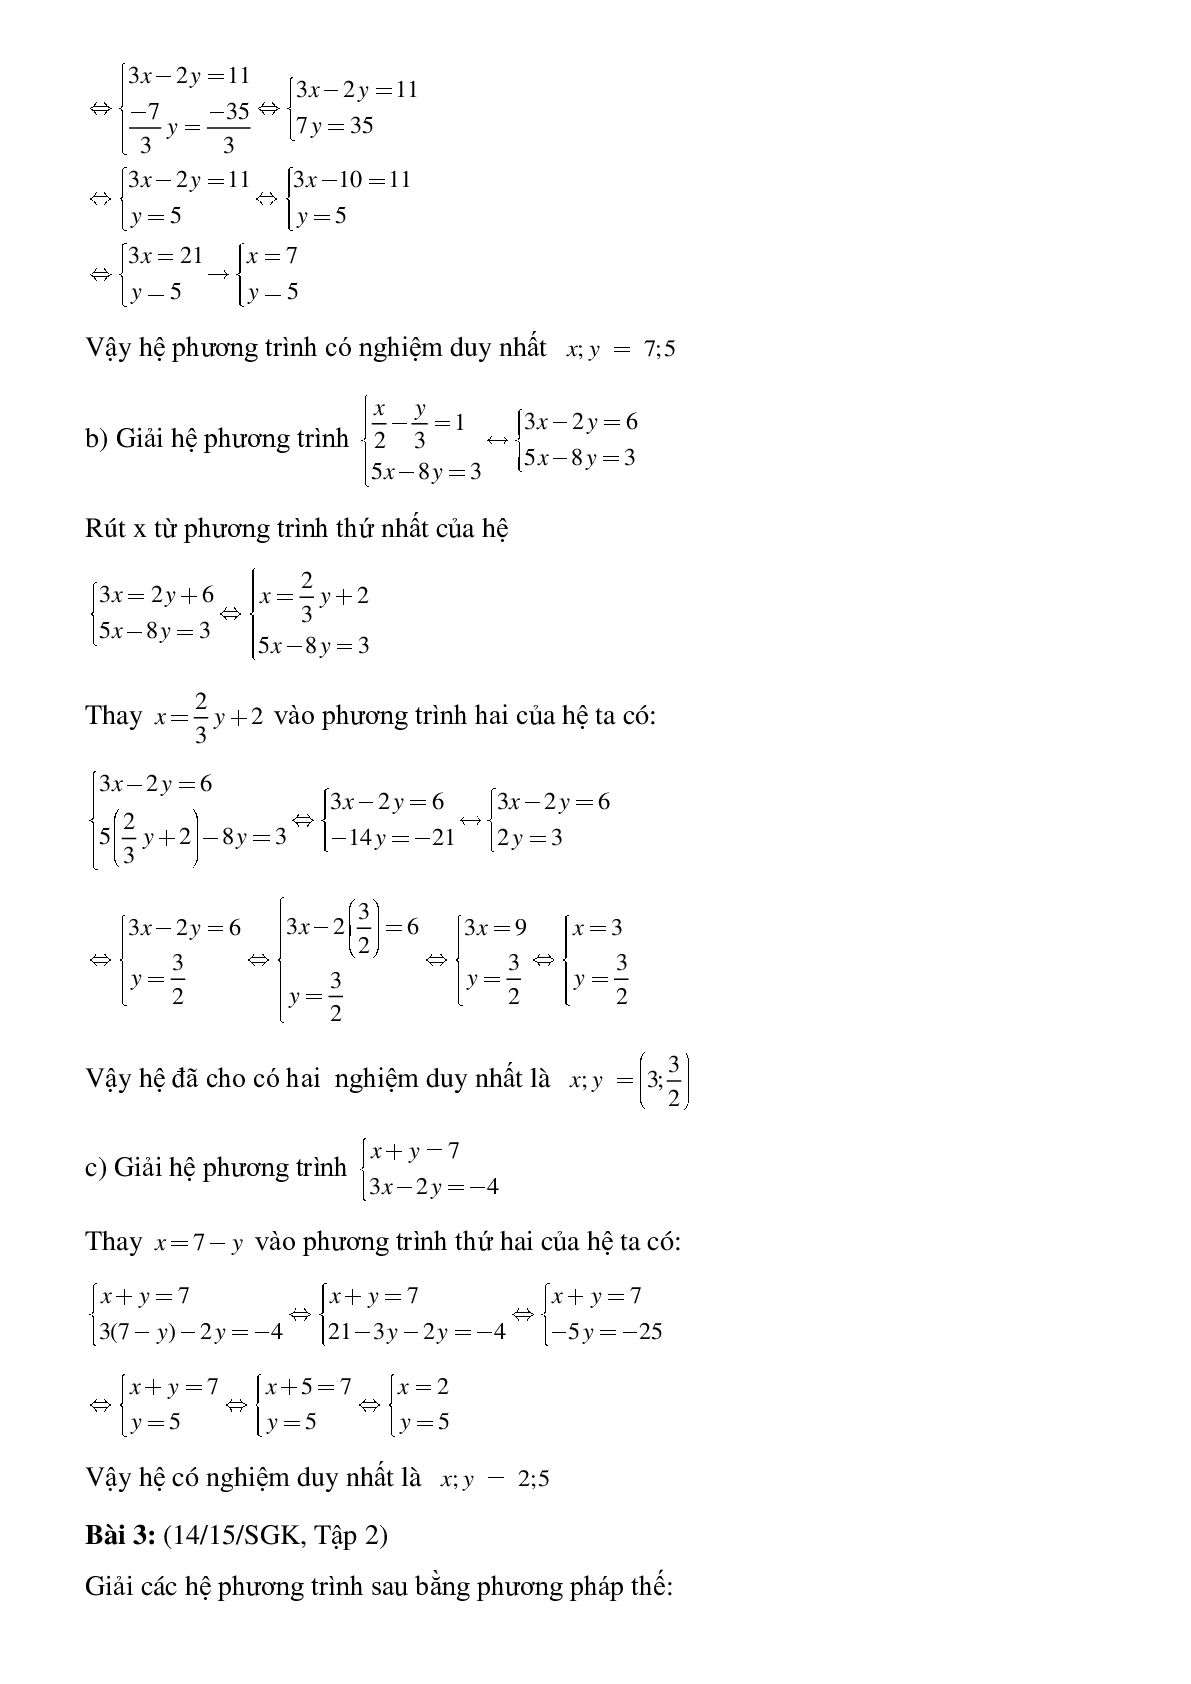 50 Bài tập Giải hệ phương trình bằng phương pháp thế (có đáp án)- Toán 9 (trang 4)